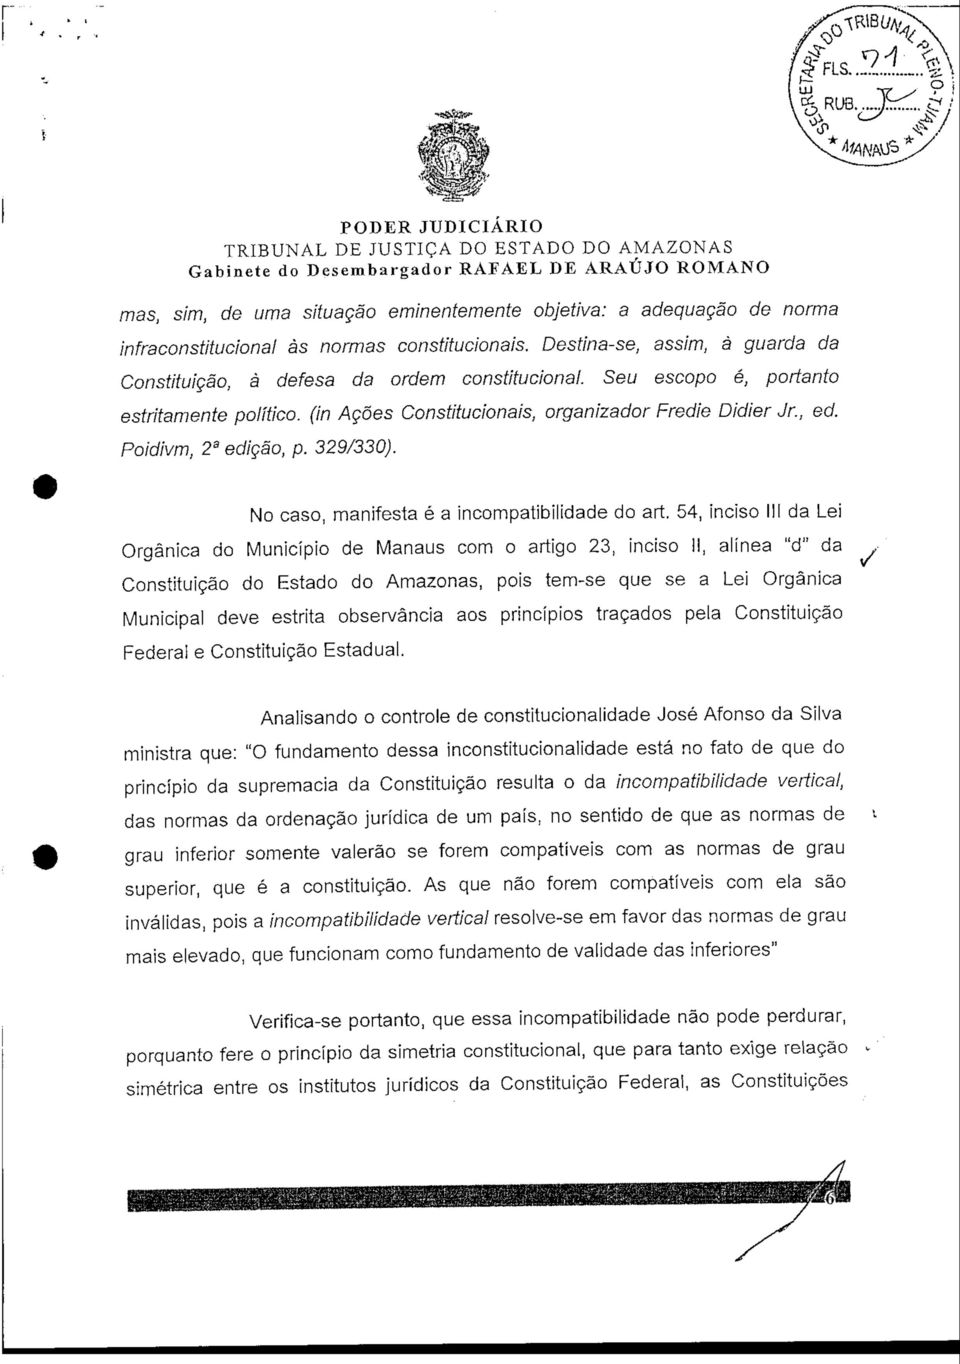 No caso, manifesta é a incompatibilidade do art 54, inciso III da Lei Orgânica do Município de Manaus com o artigo 23, inciso II, alínea "d" da Constituição do Estado do Amazonas, pois tem-se que se